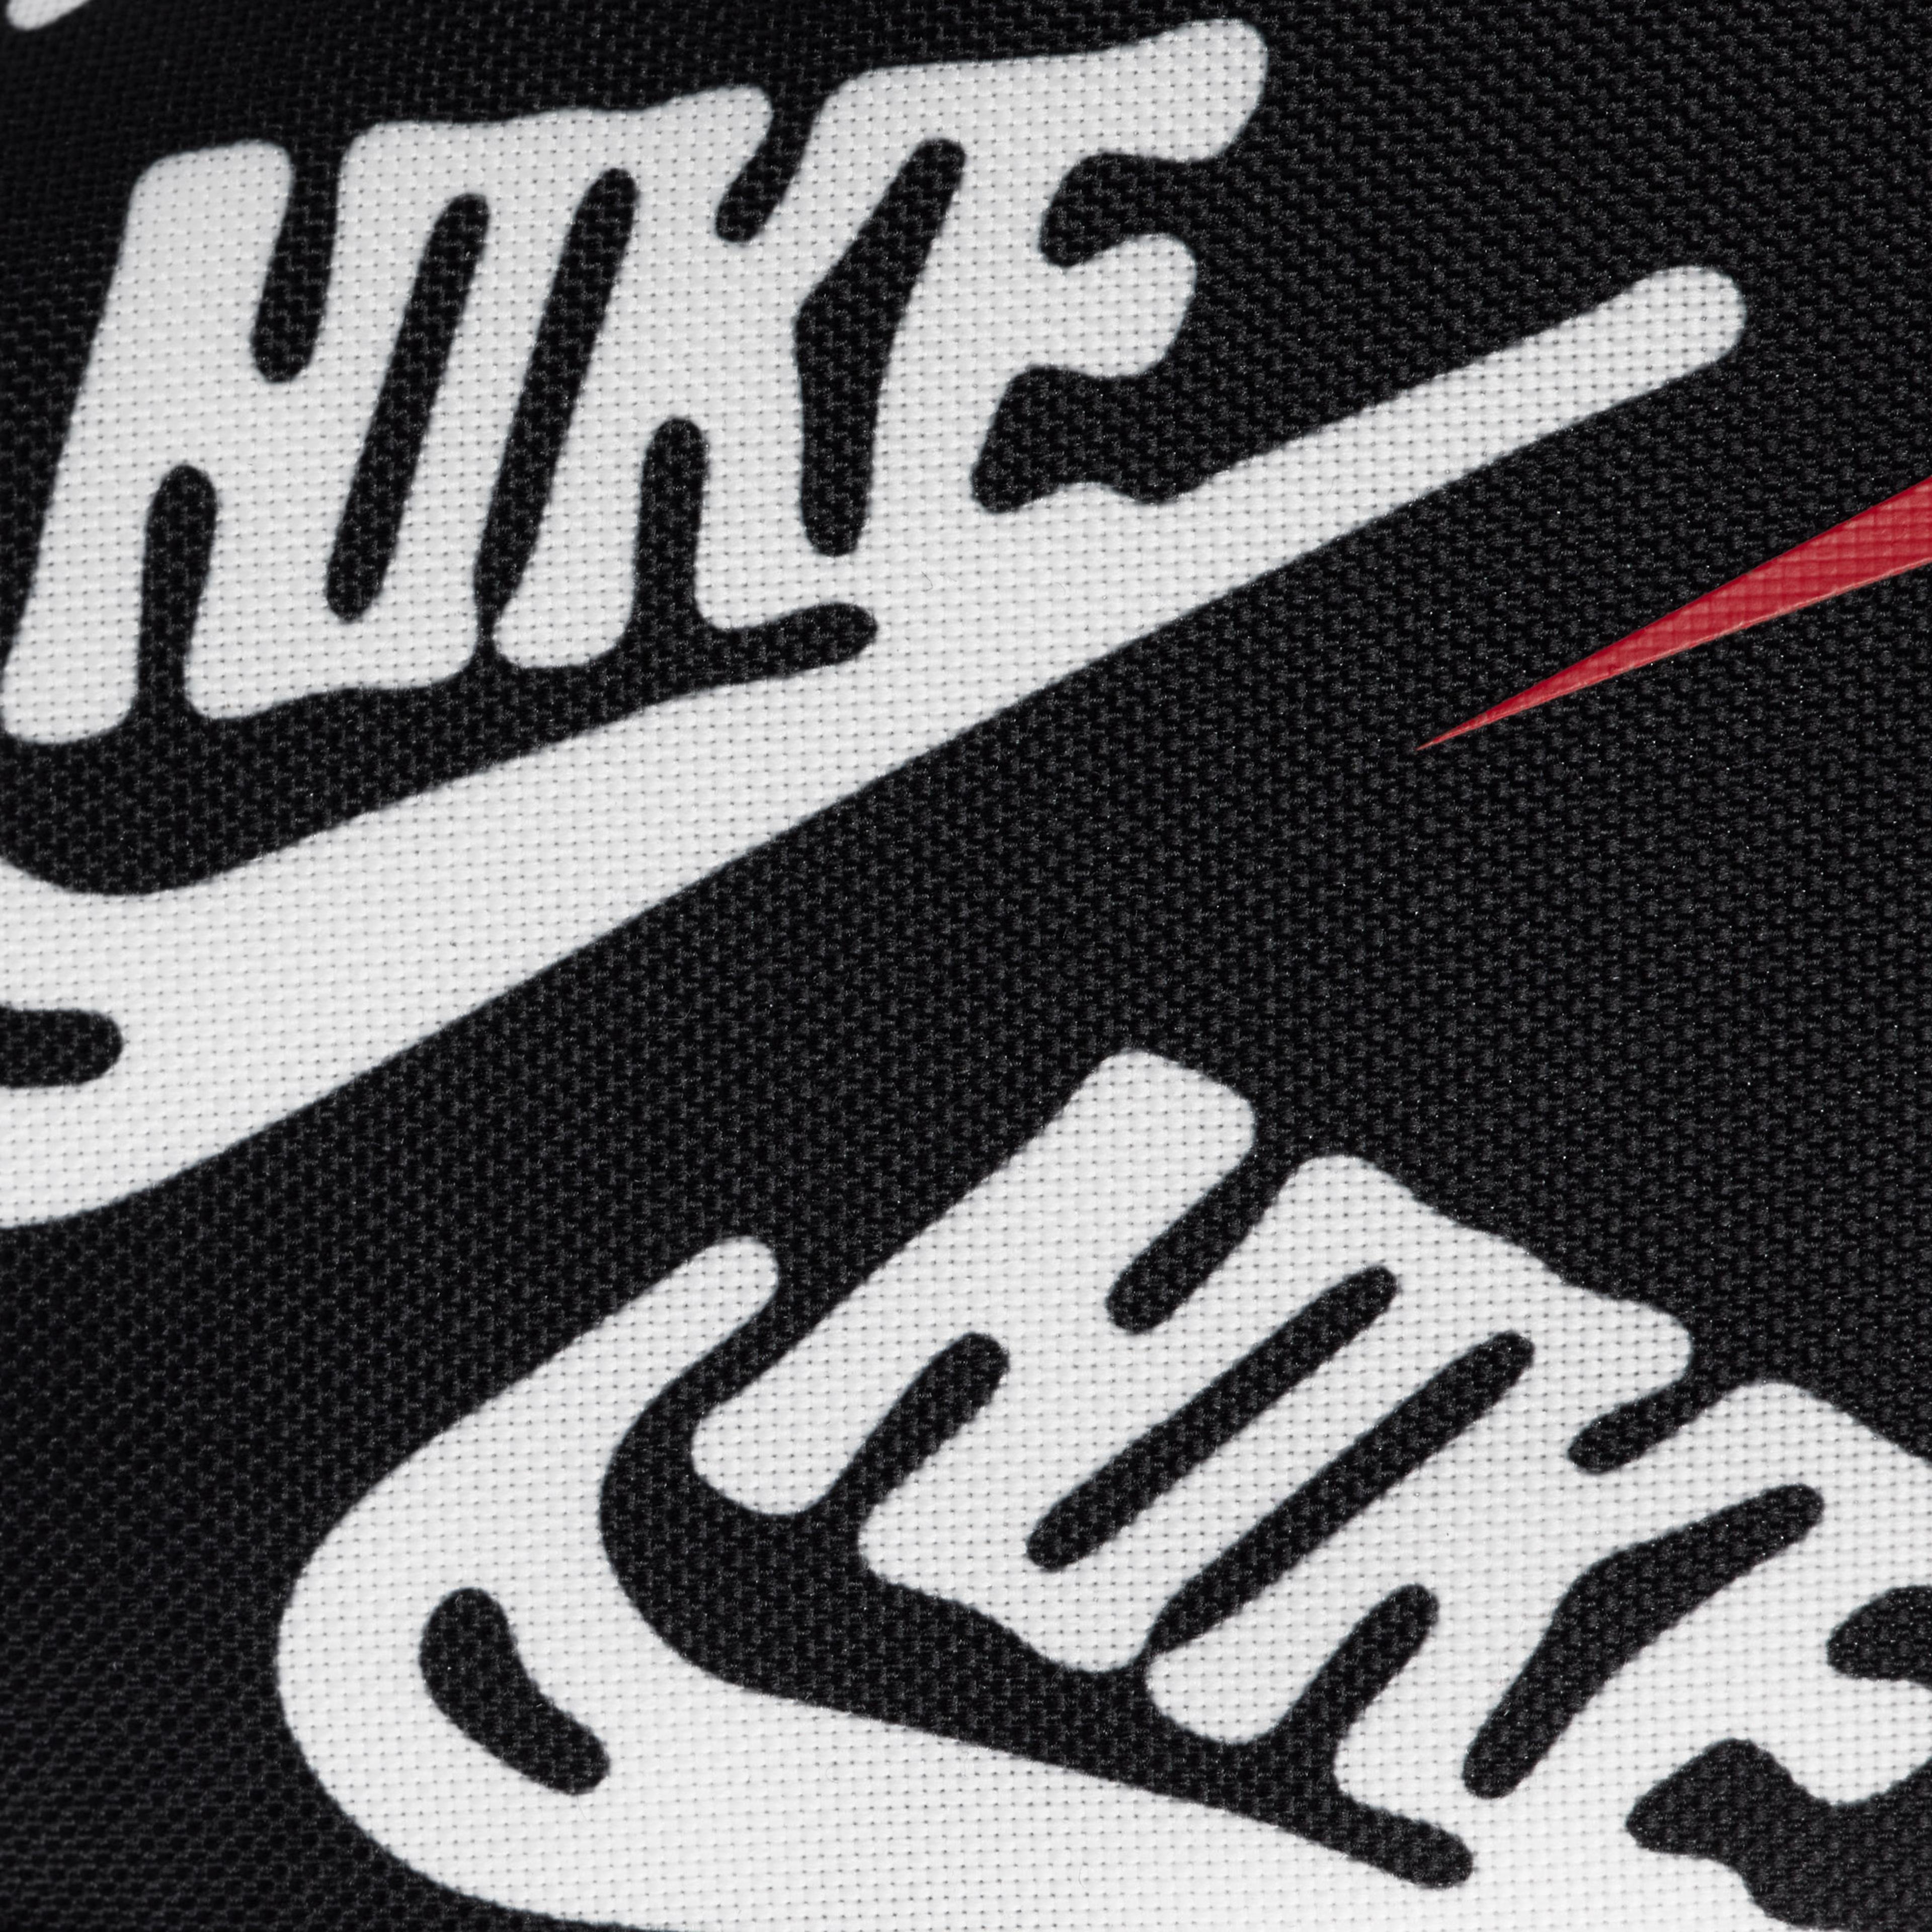 Nike Heritage Unisex Siyah Bel Çantası